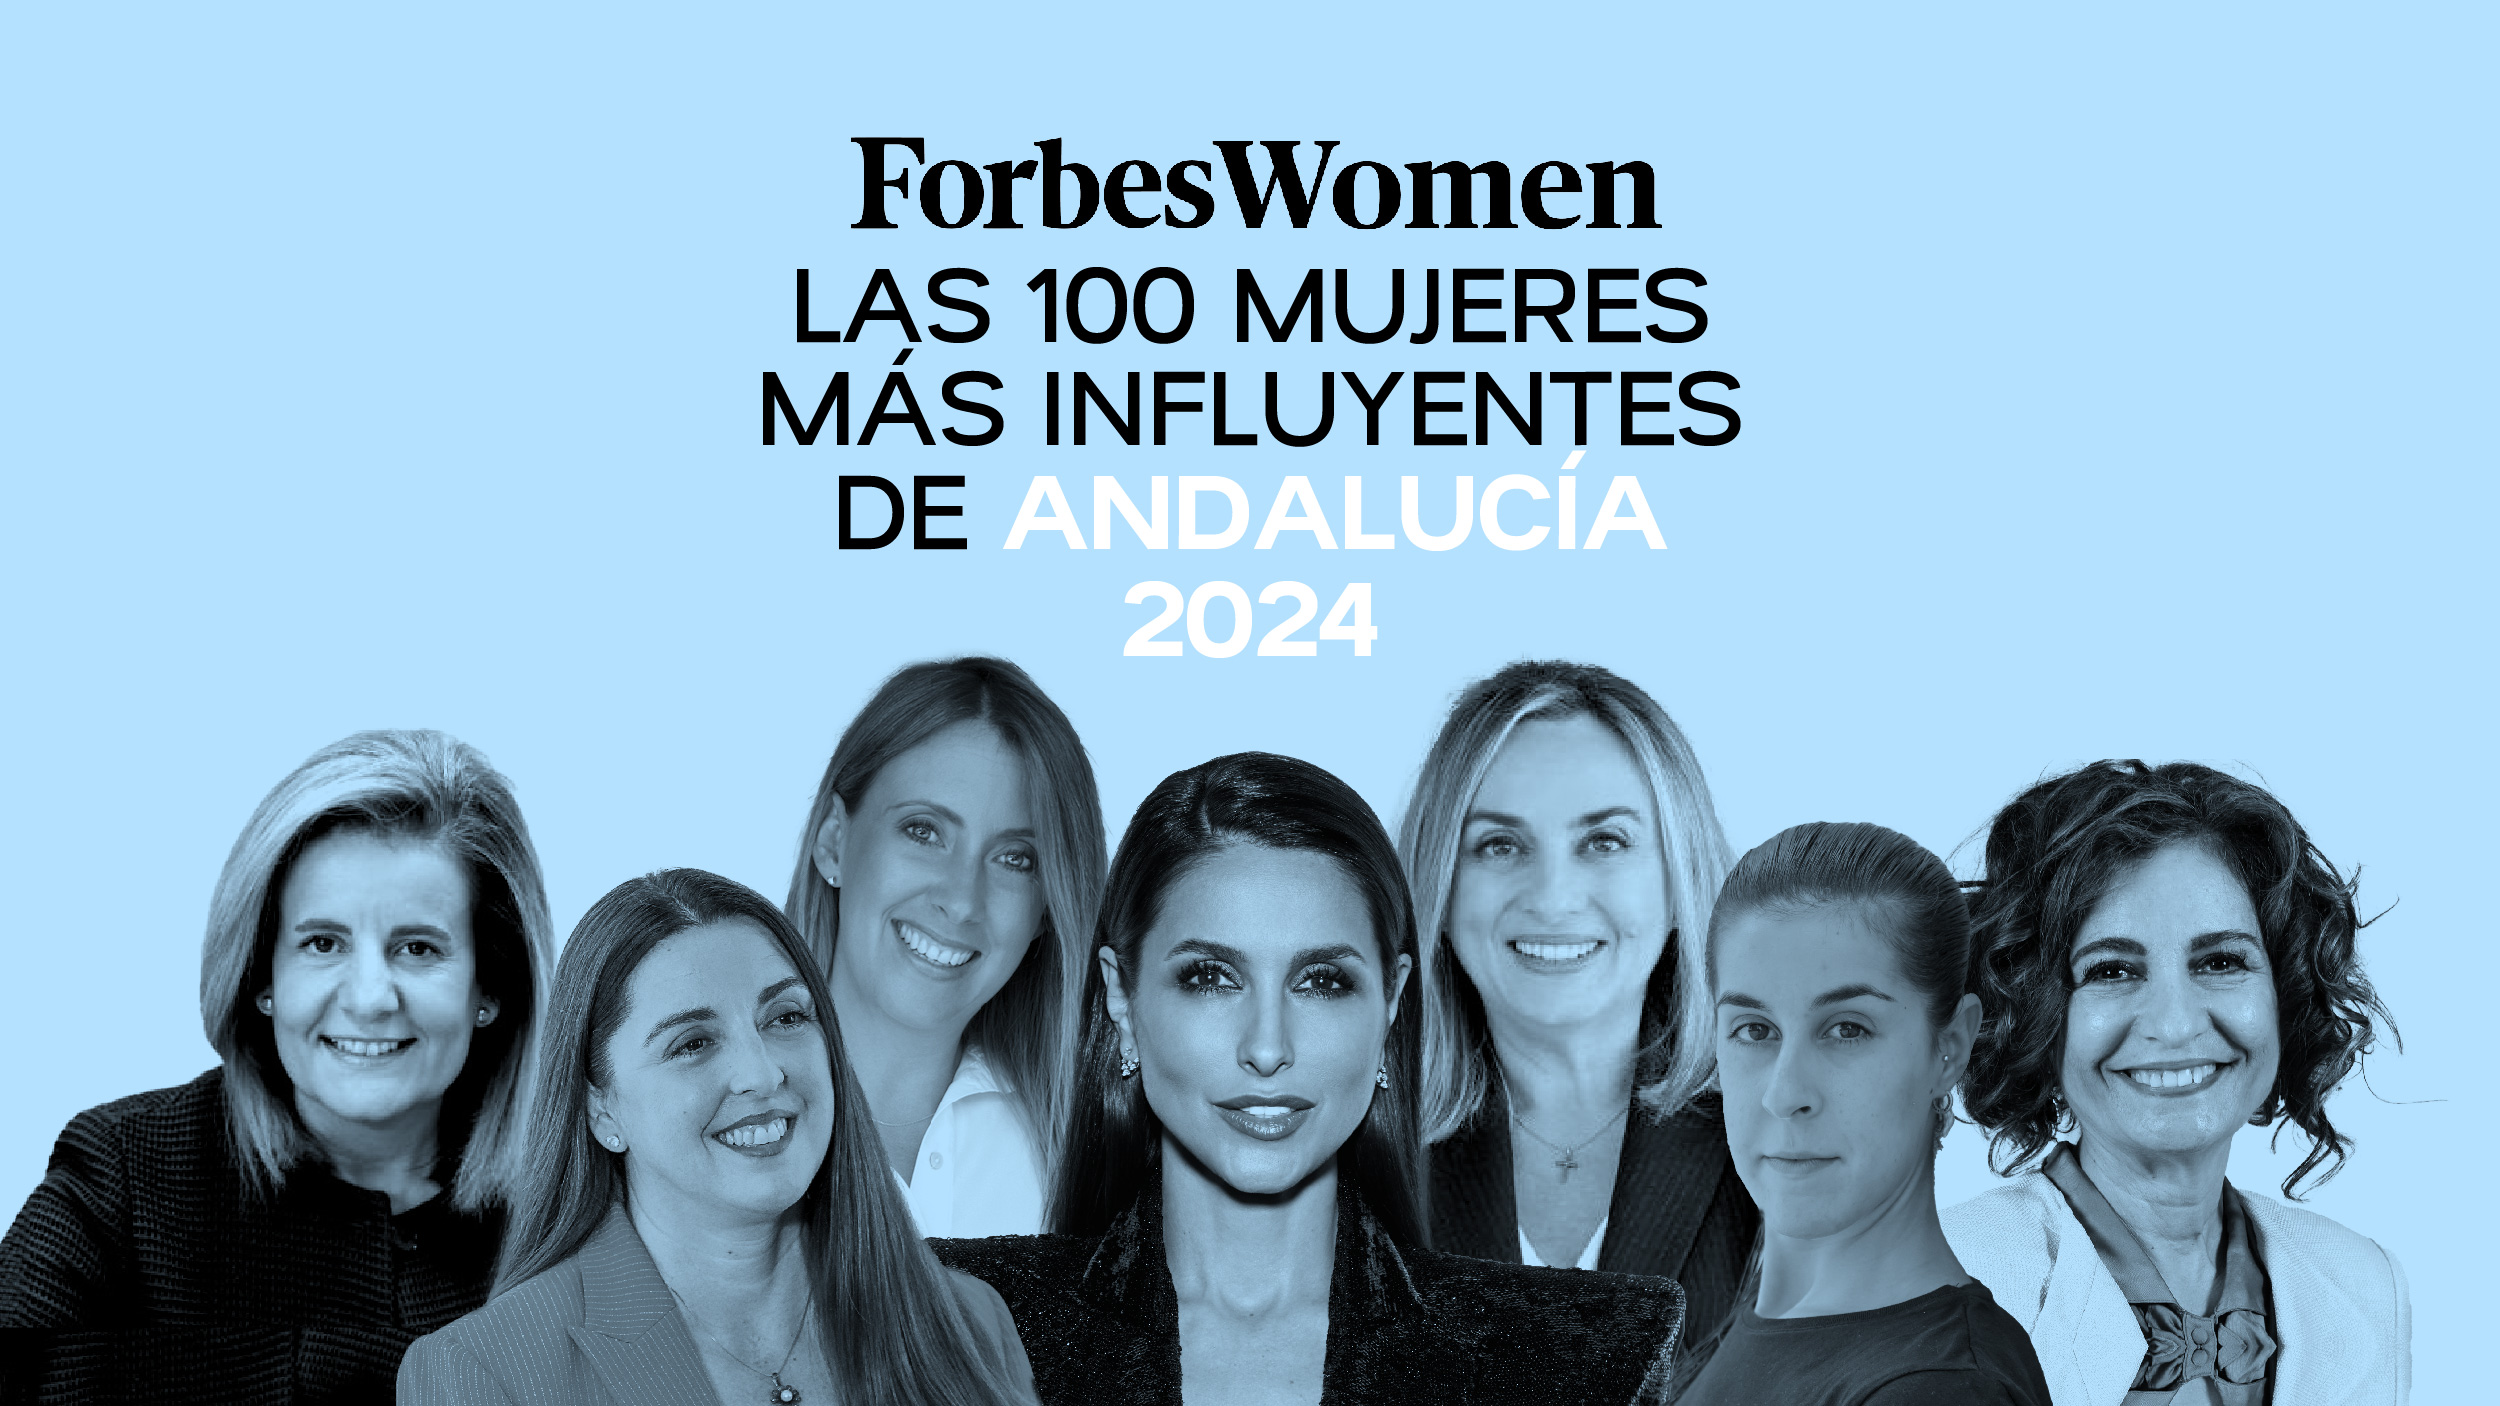 Las 100 mujeres más influyentes de Andalucía 2024